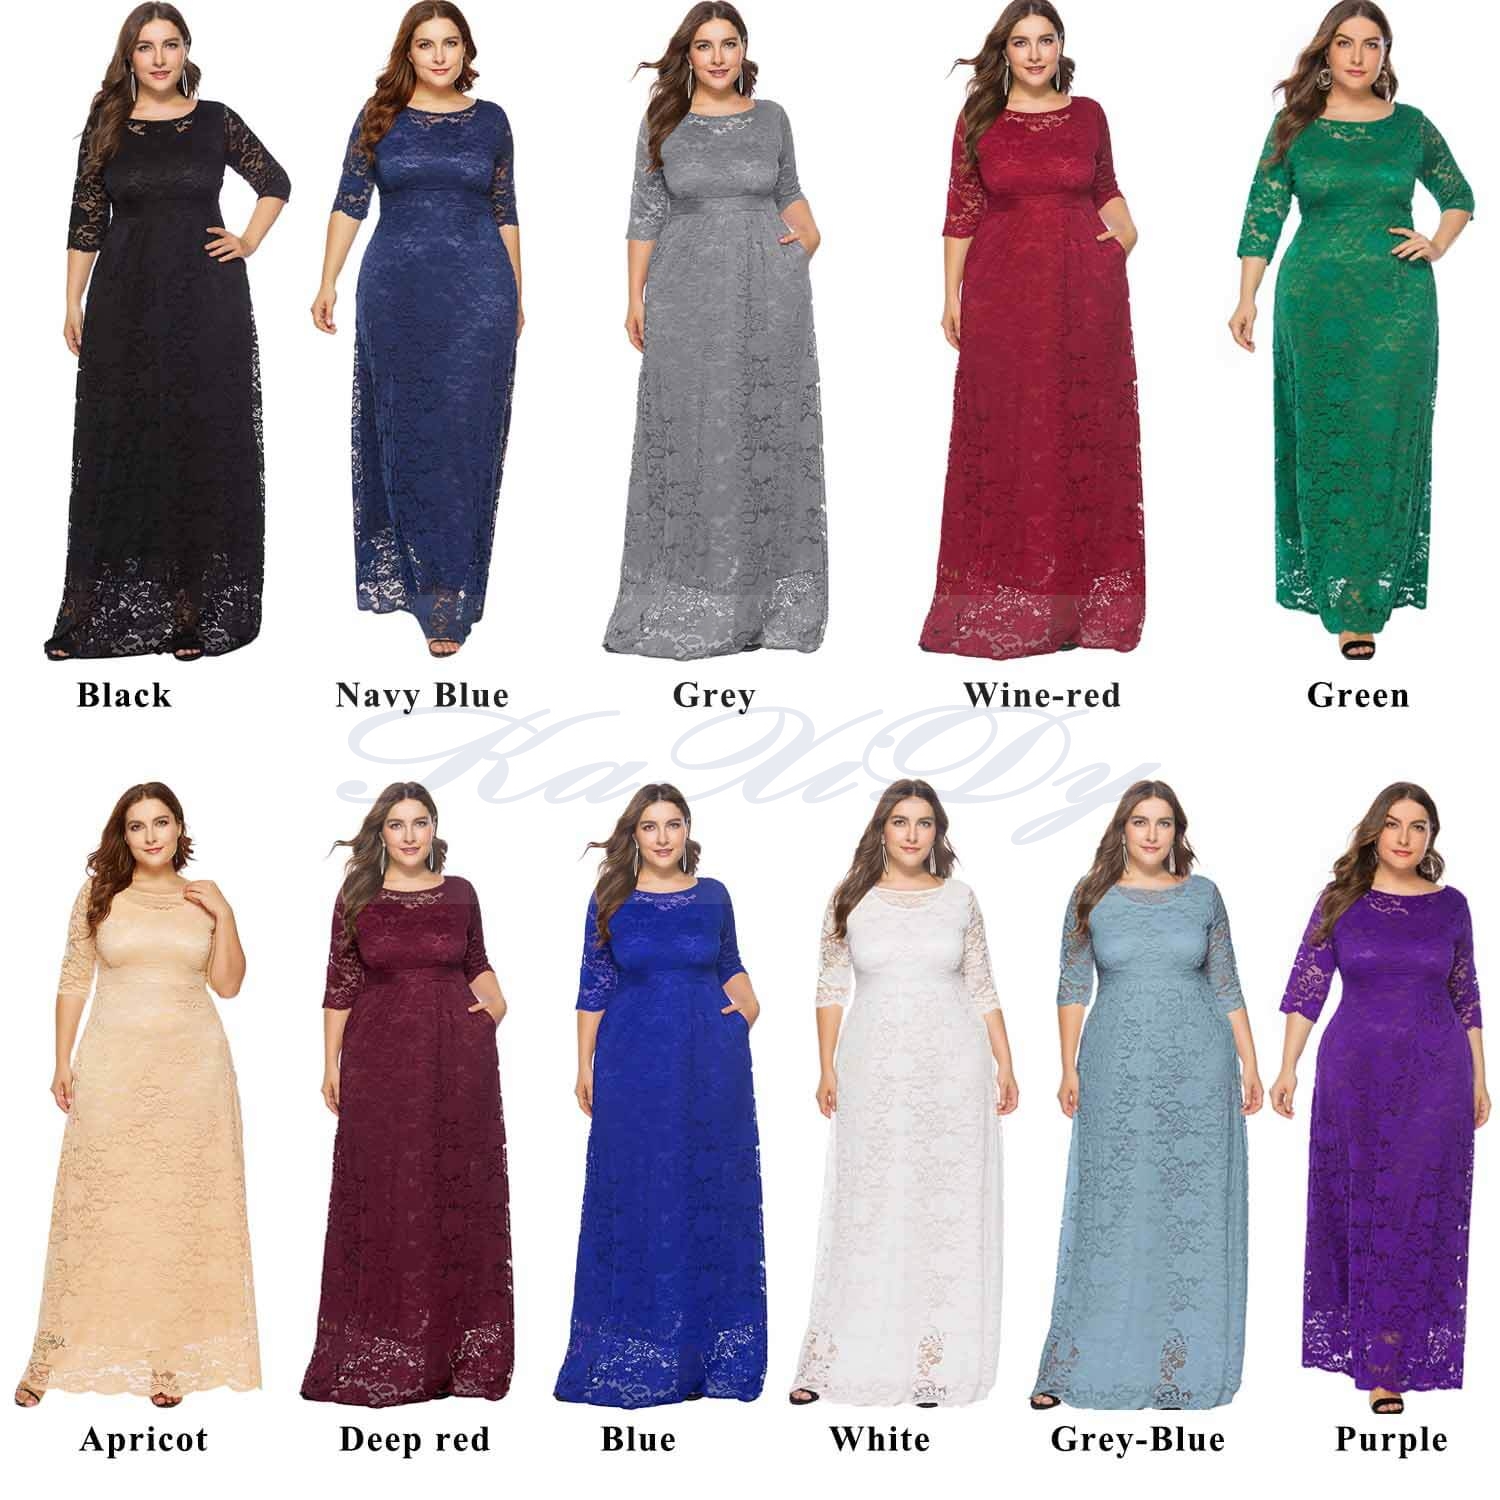 women's plus size dresses